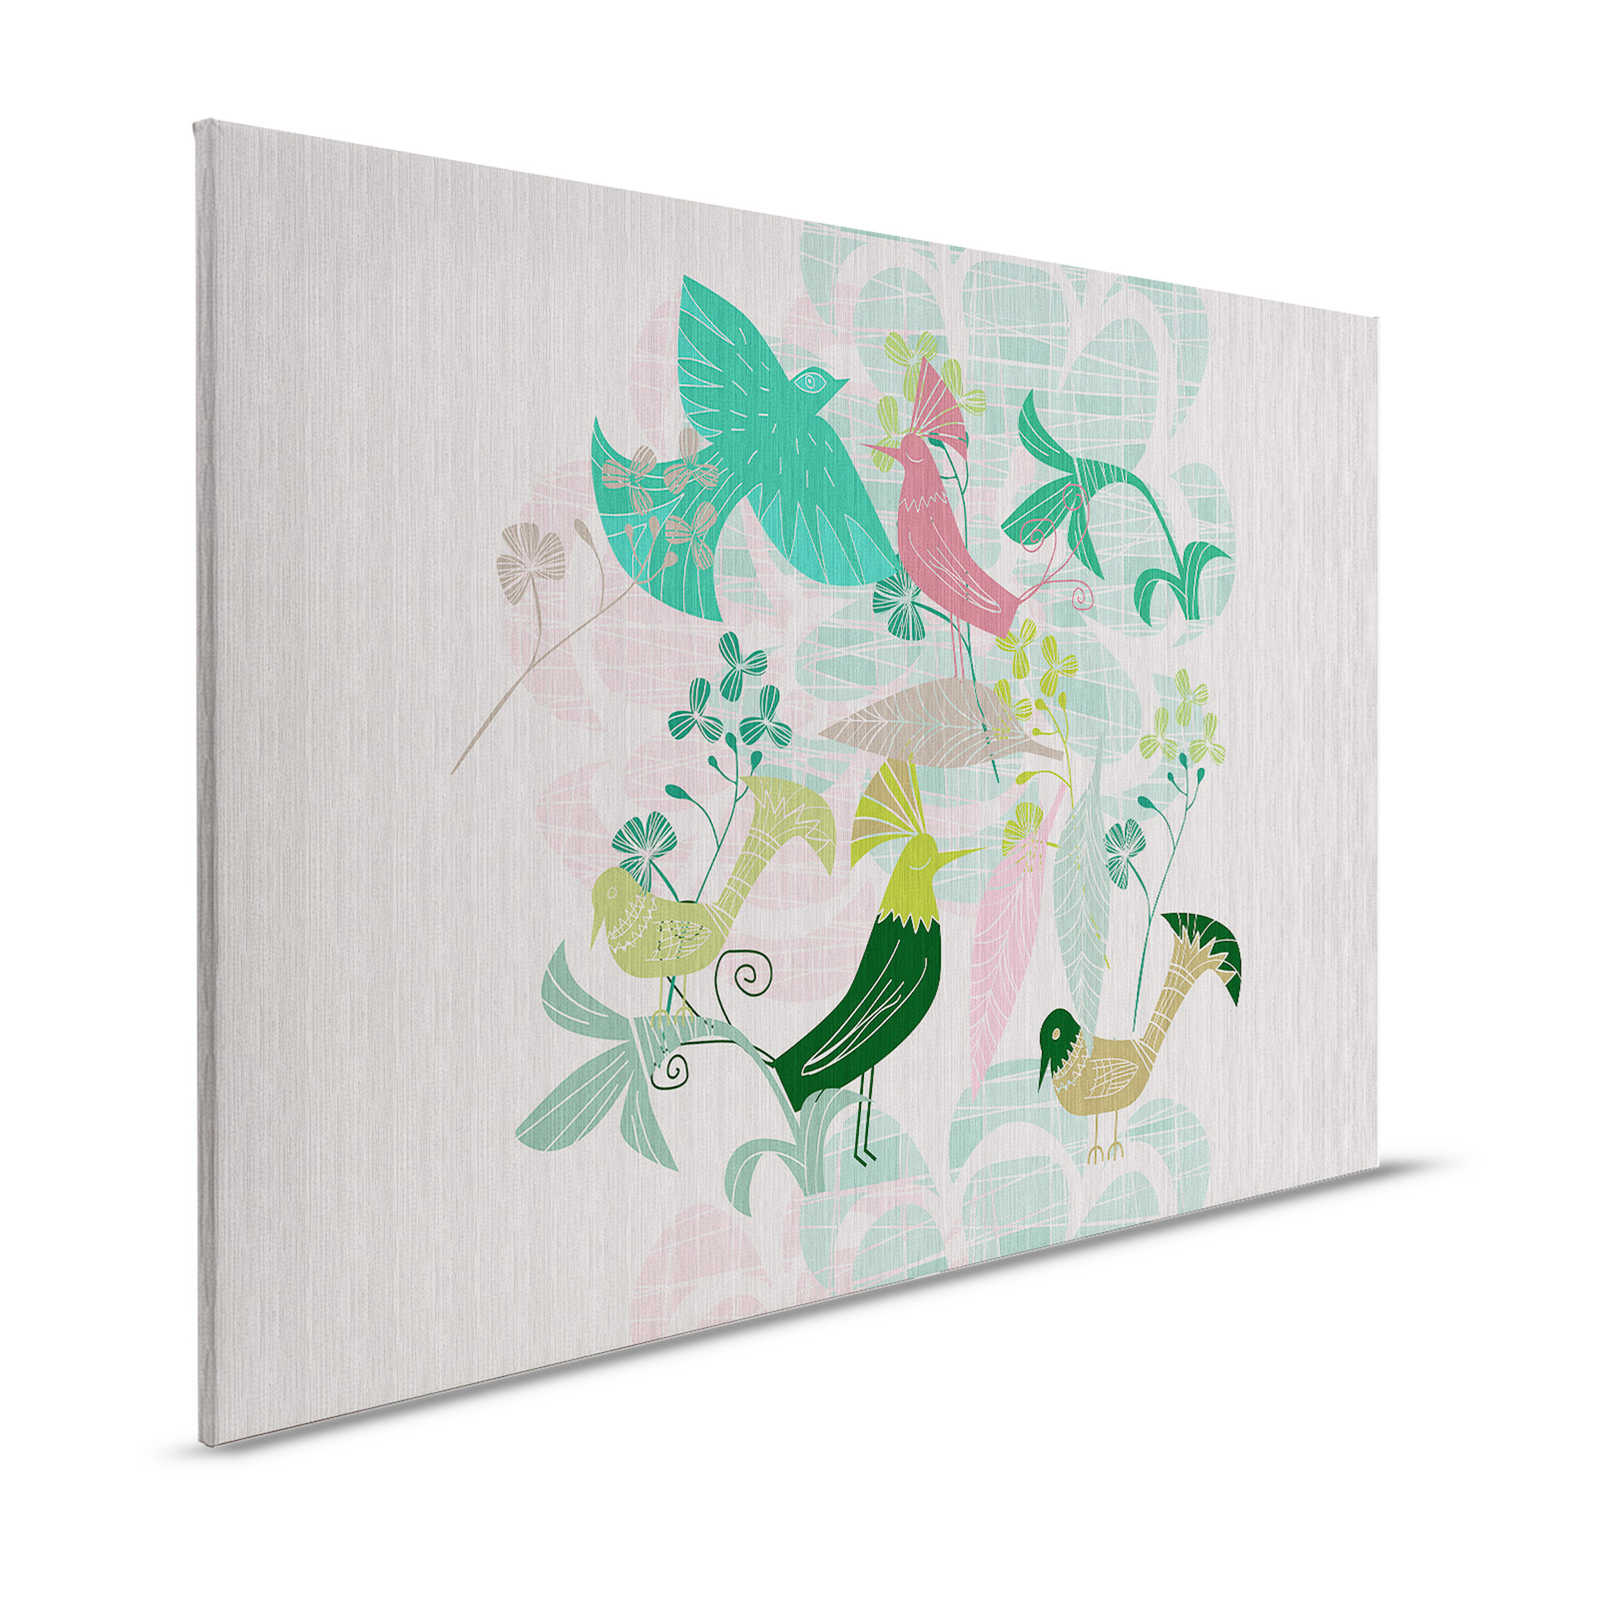 Birdland 3 - Toile Vert & Rose Oiseaux motif rétro - 1,20 m x 0,80 m
